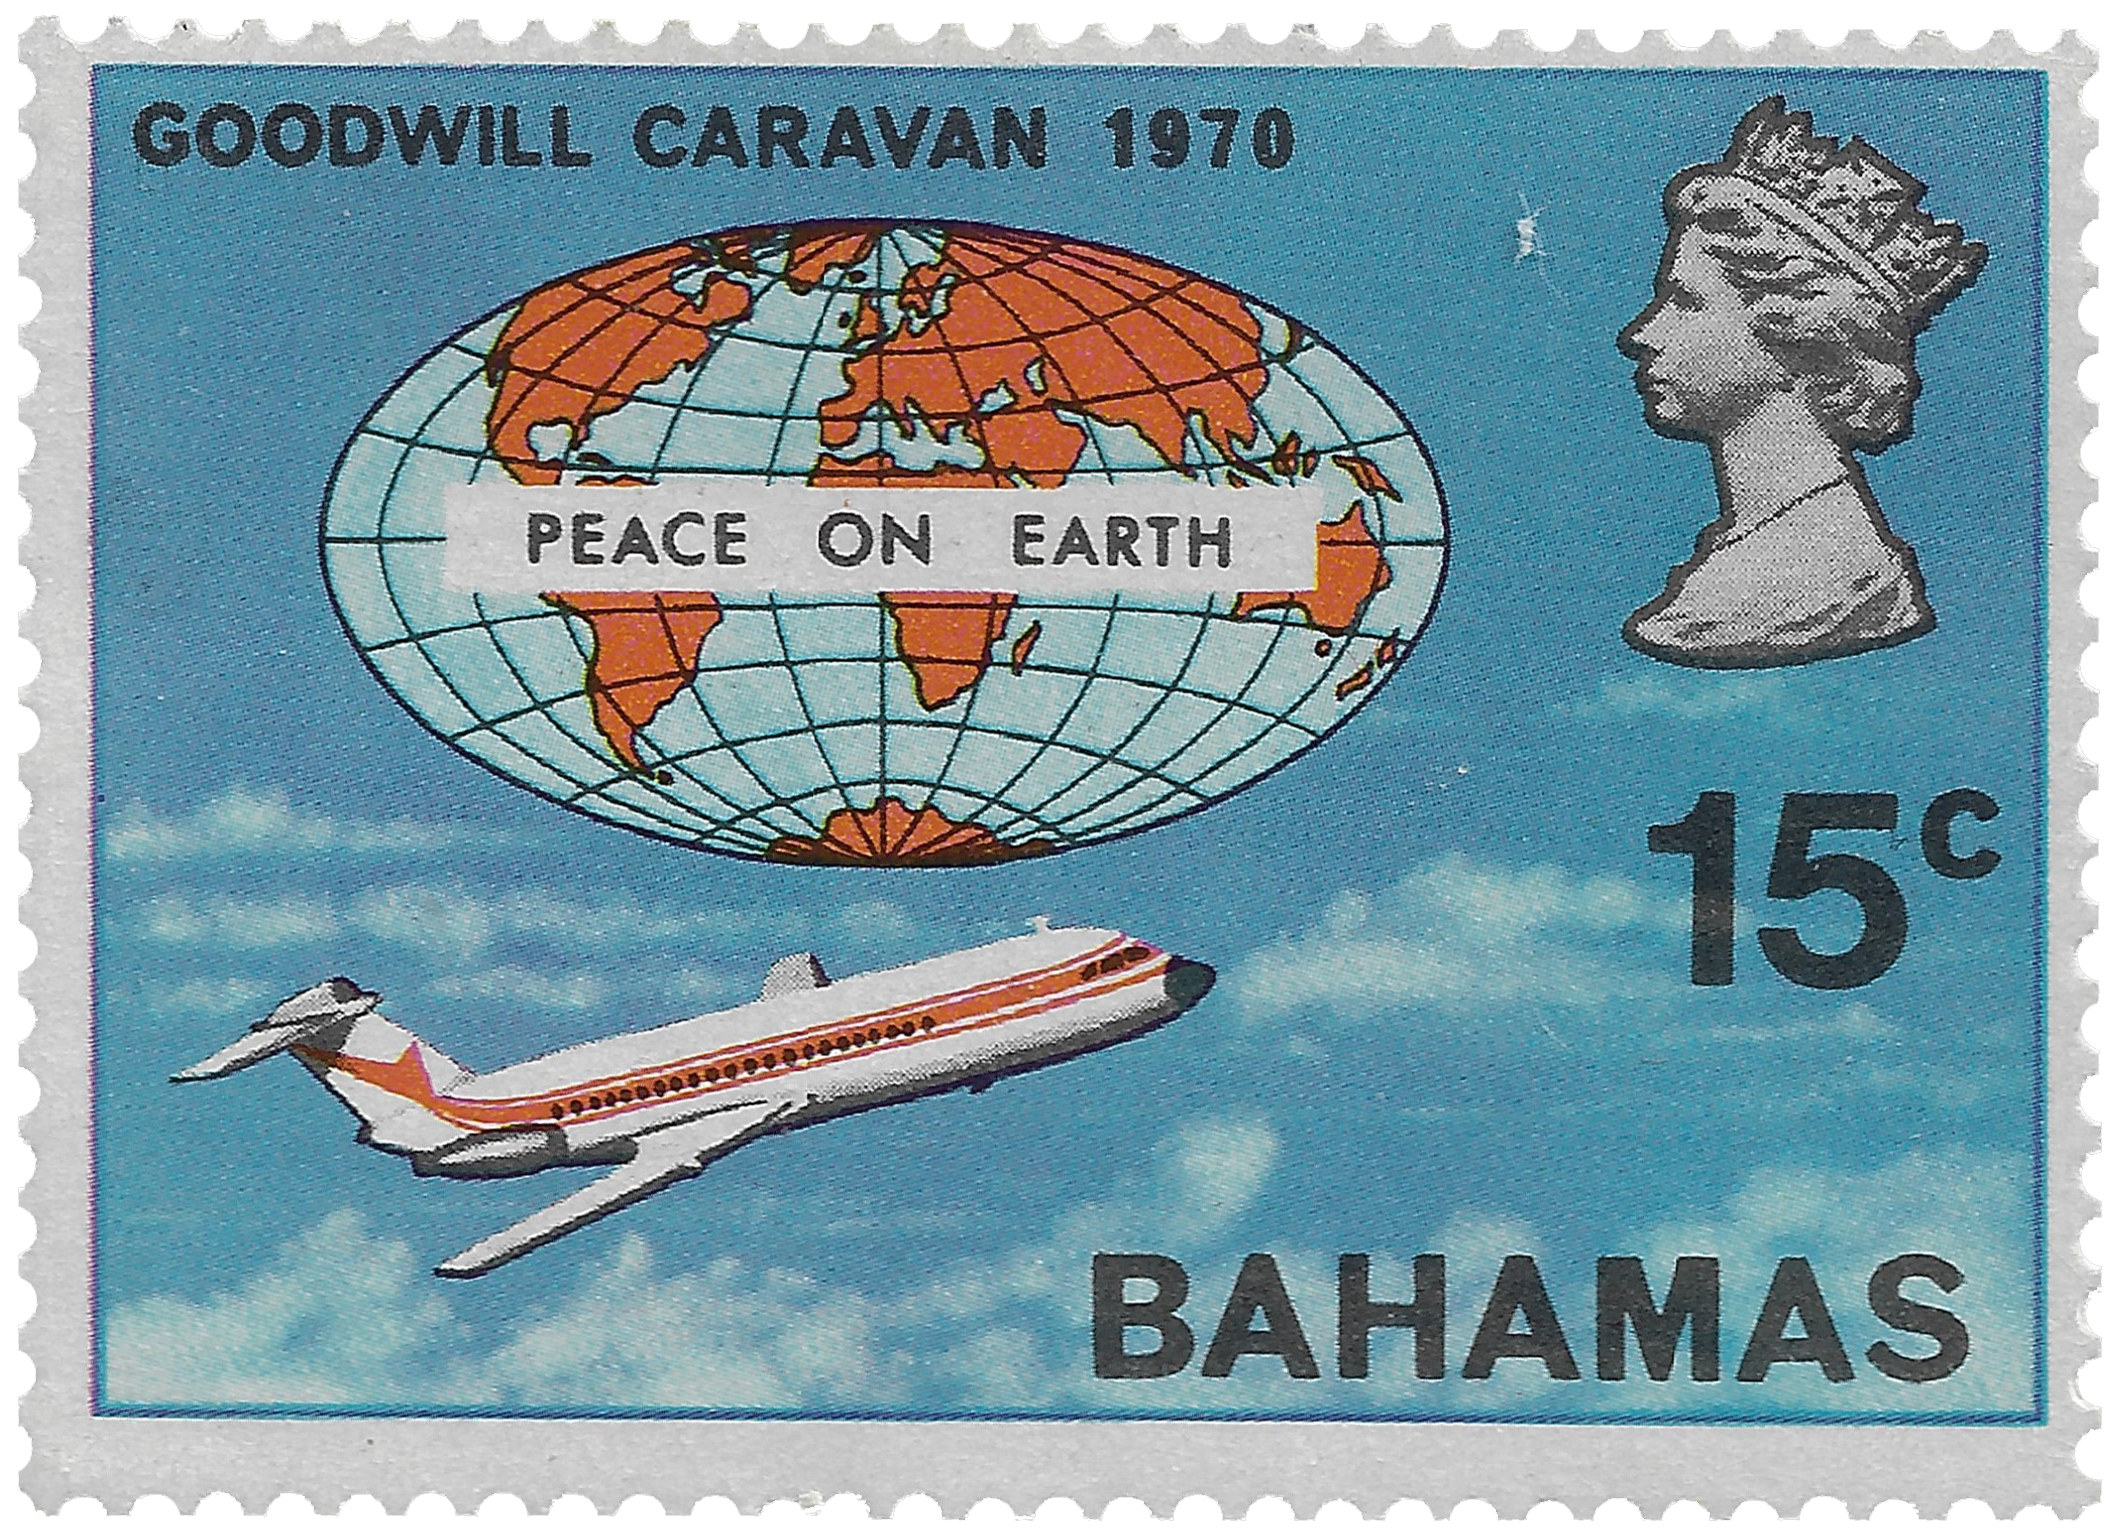 15c 1970, Goodwill Caravan, Peace on Earth